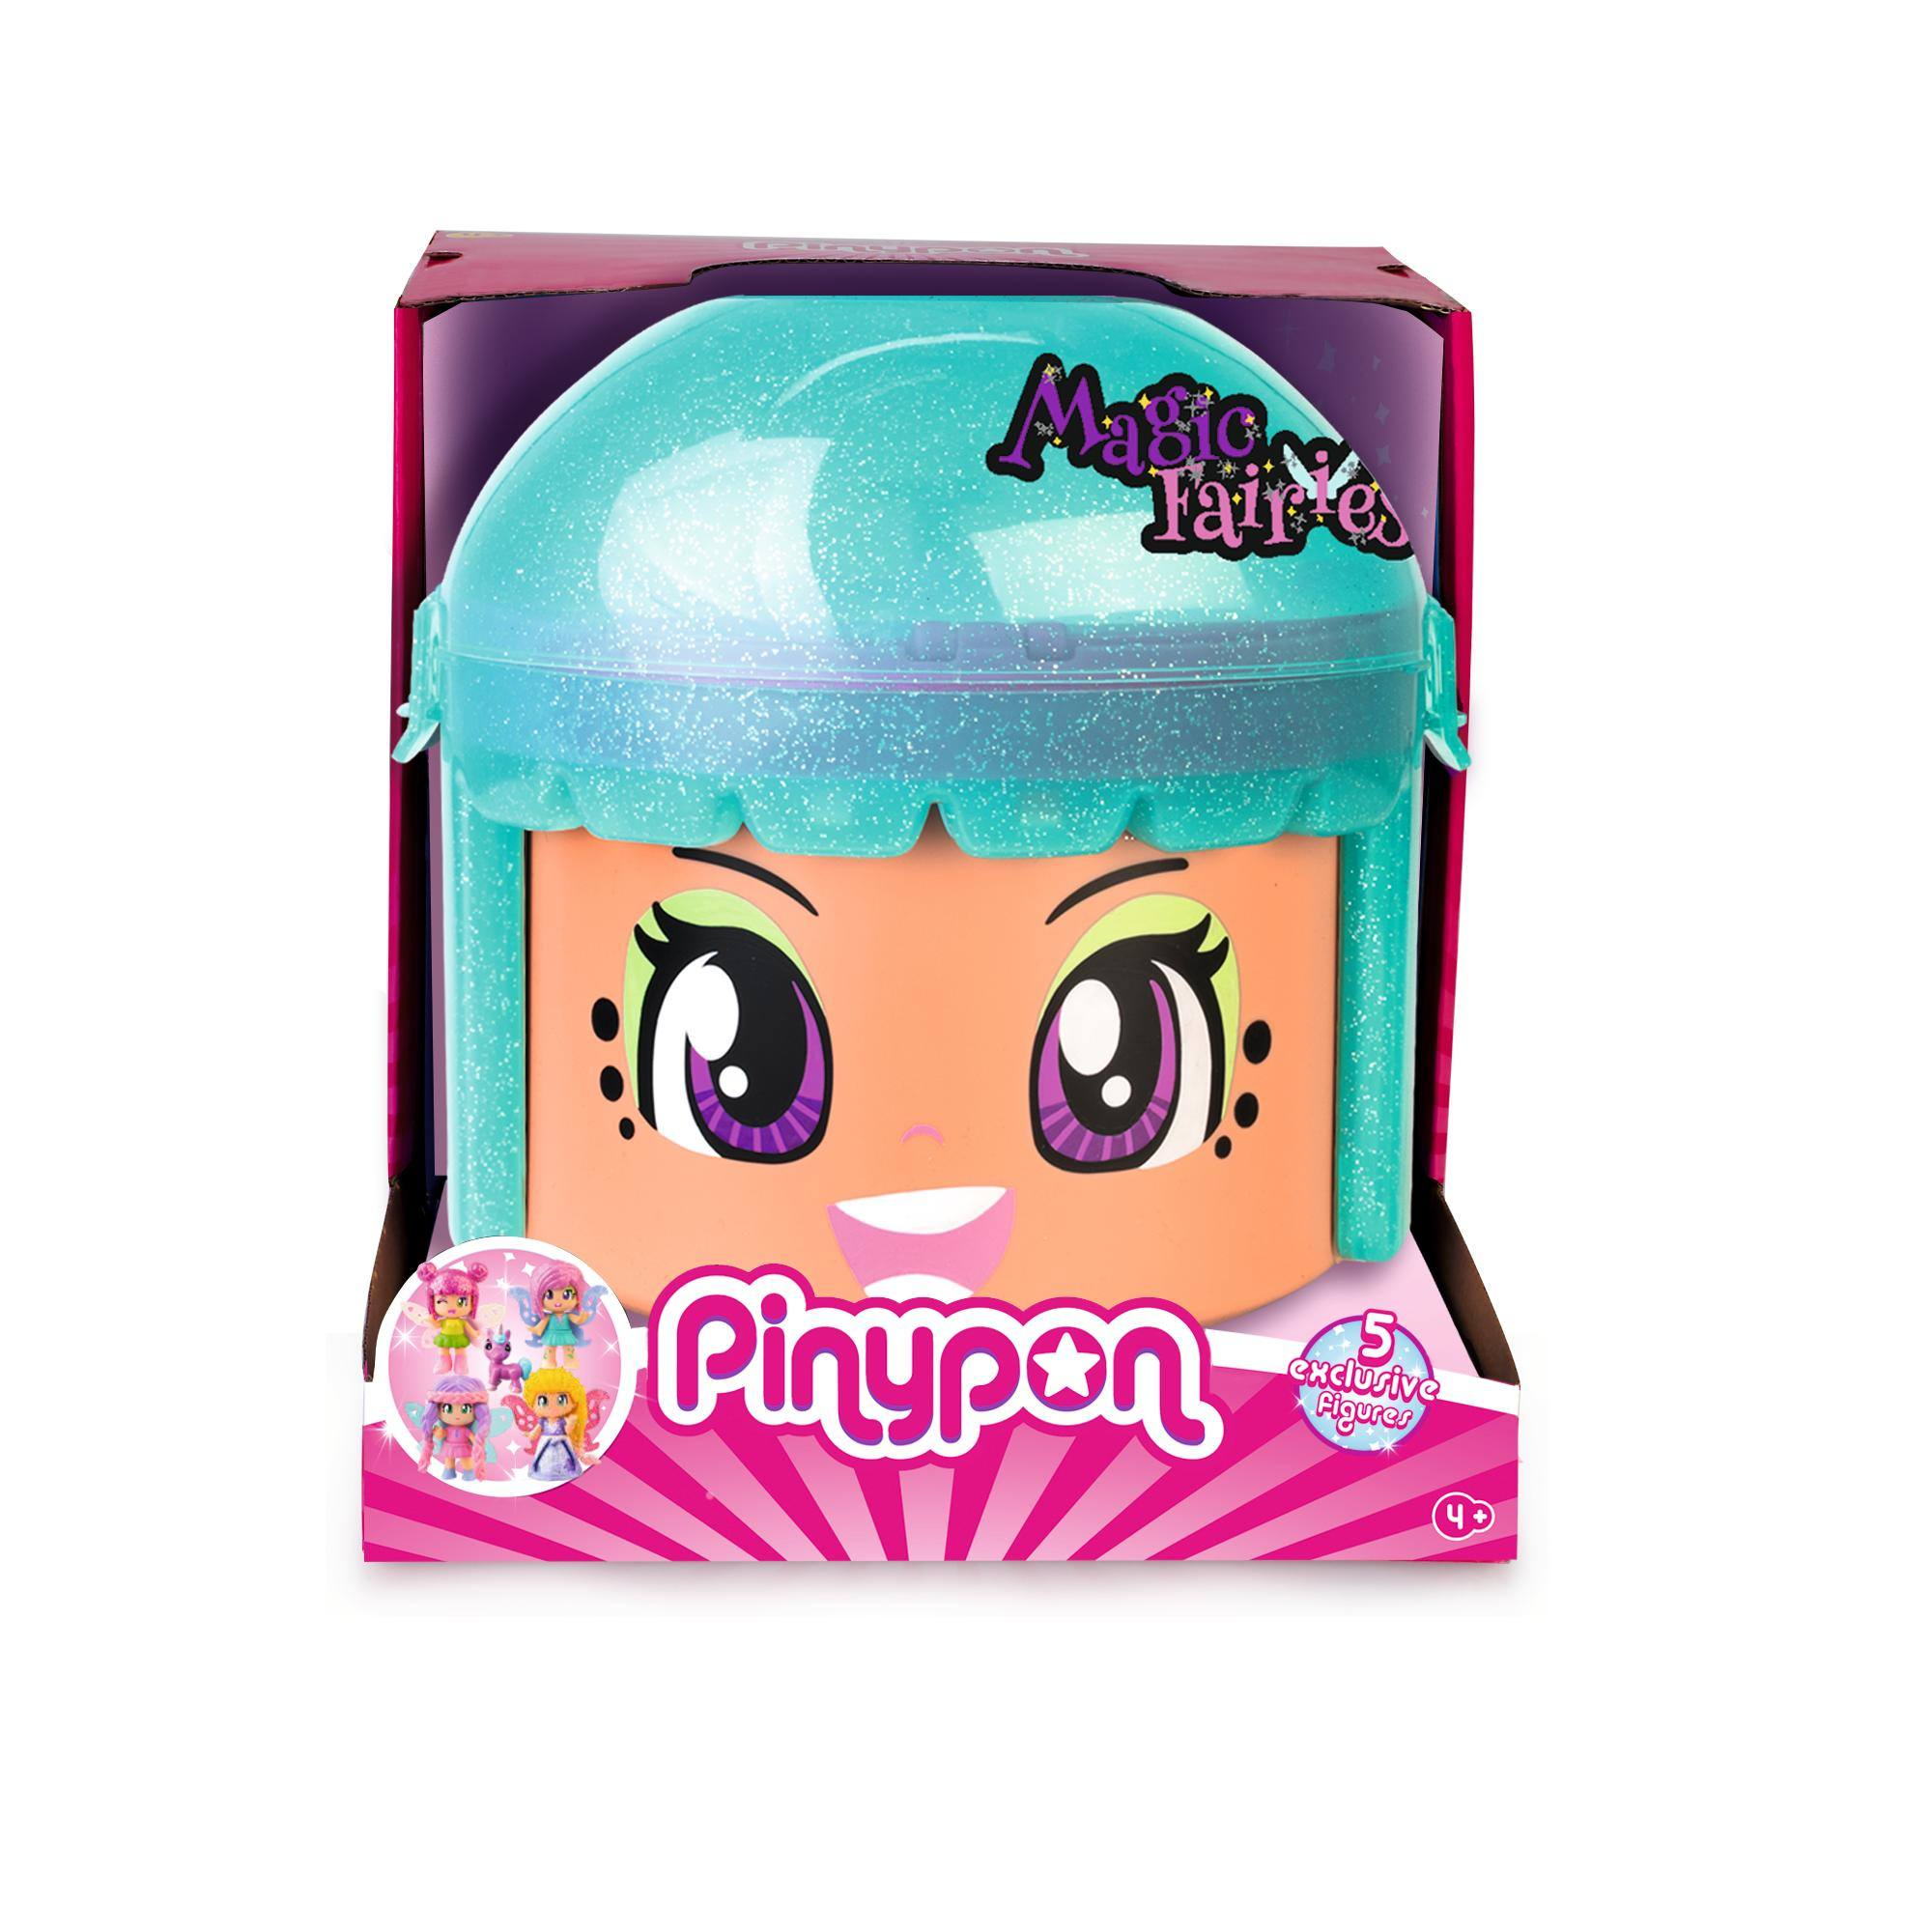 Pinypon magic fairies, contenitore con quattro personaggi esclusivi e unicorno; - PINYPON